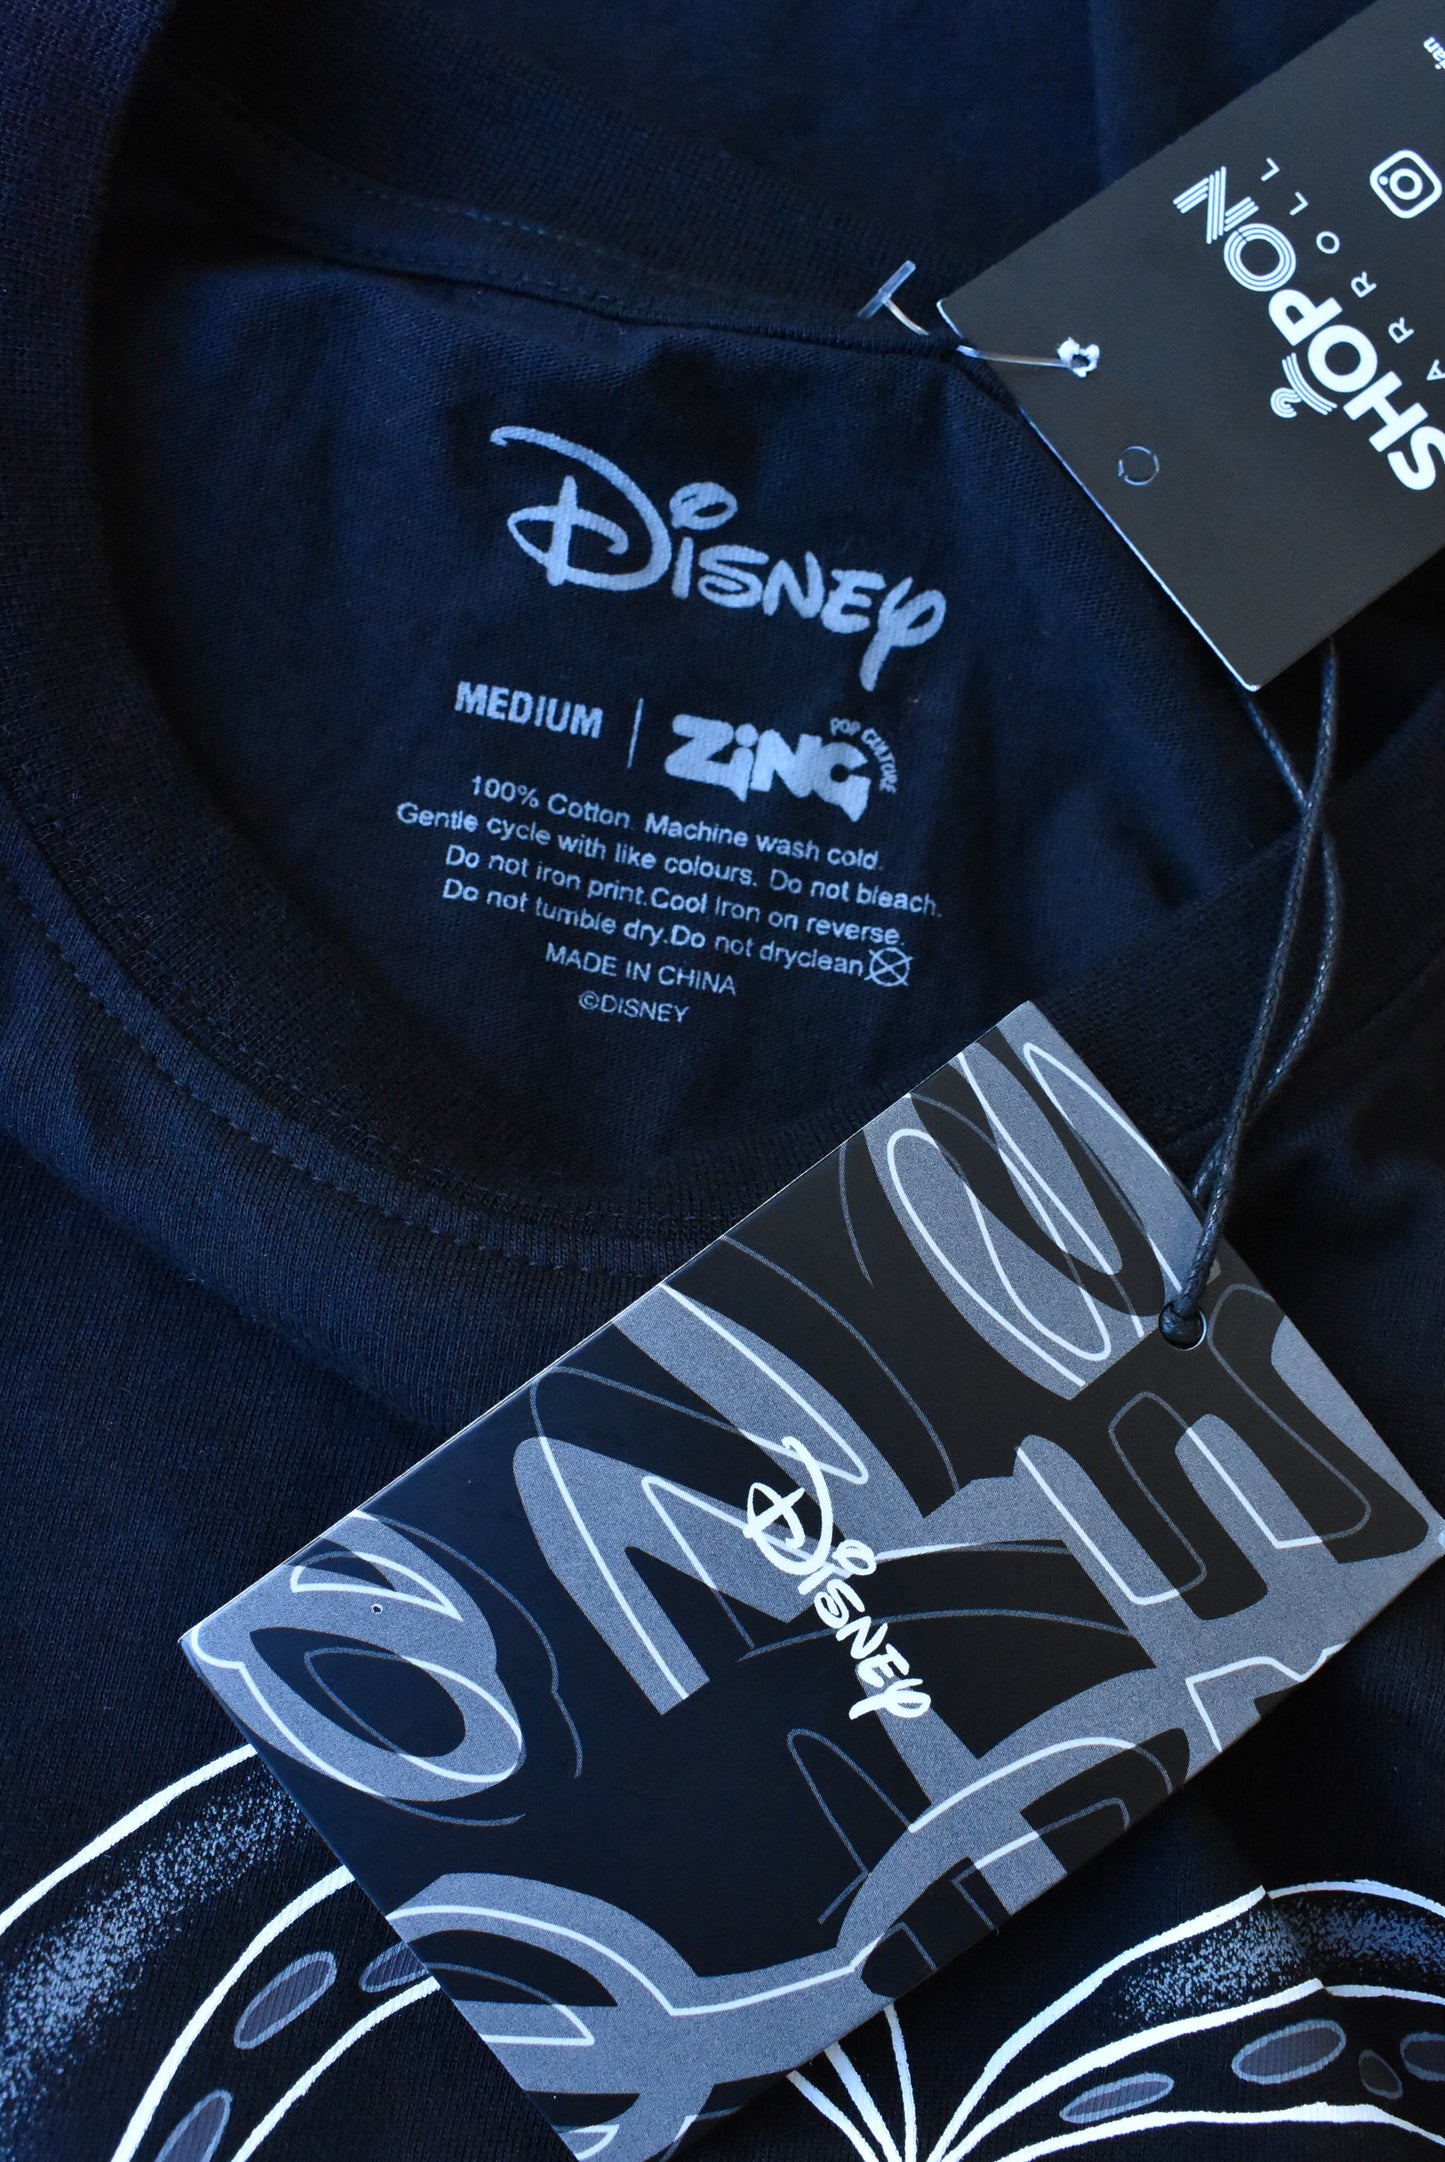 Disney pop culture zing t-shirt, M (NWT)